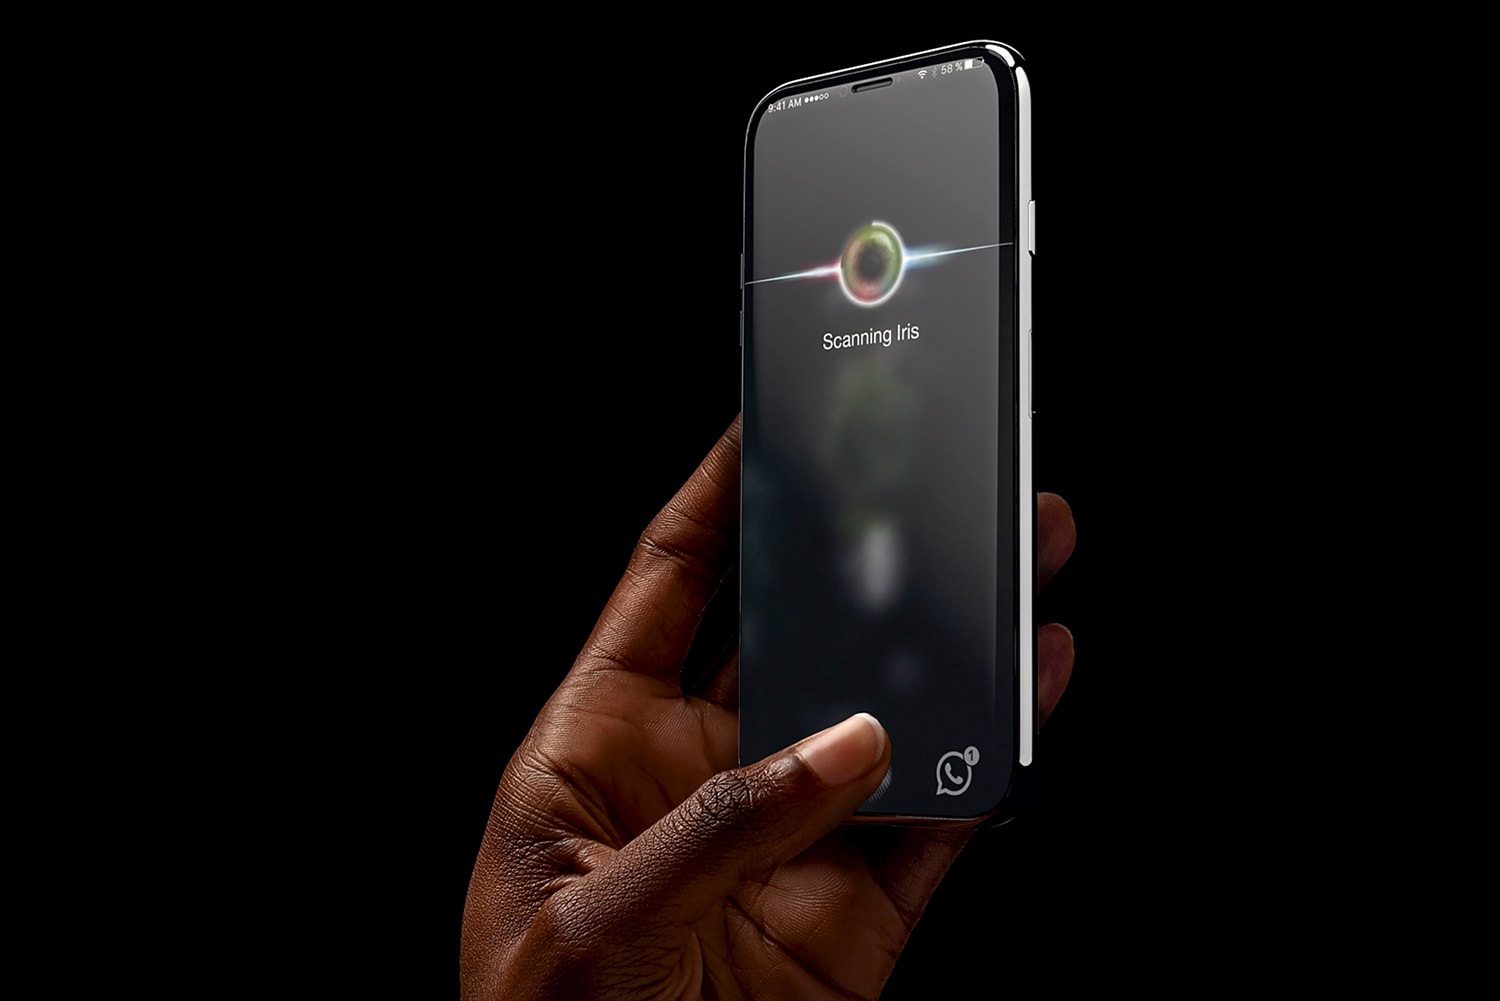 分析師郭明池認為 iPhone 8 將以人臉識別取代 Touch ID 